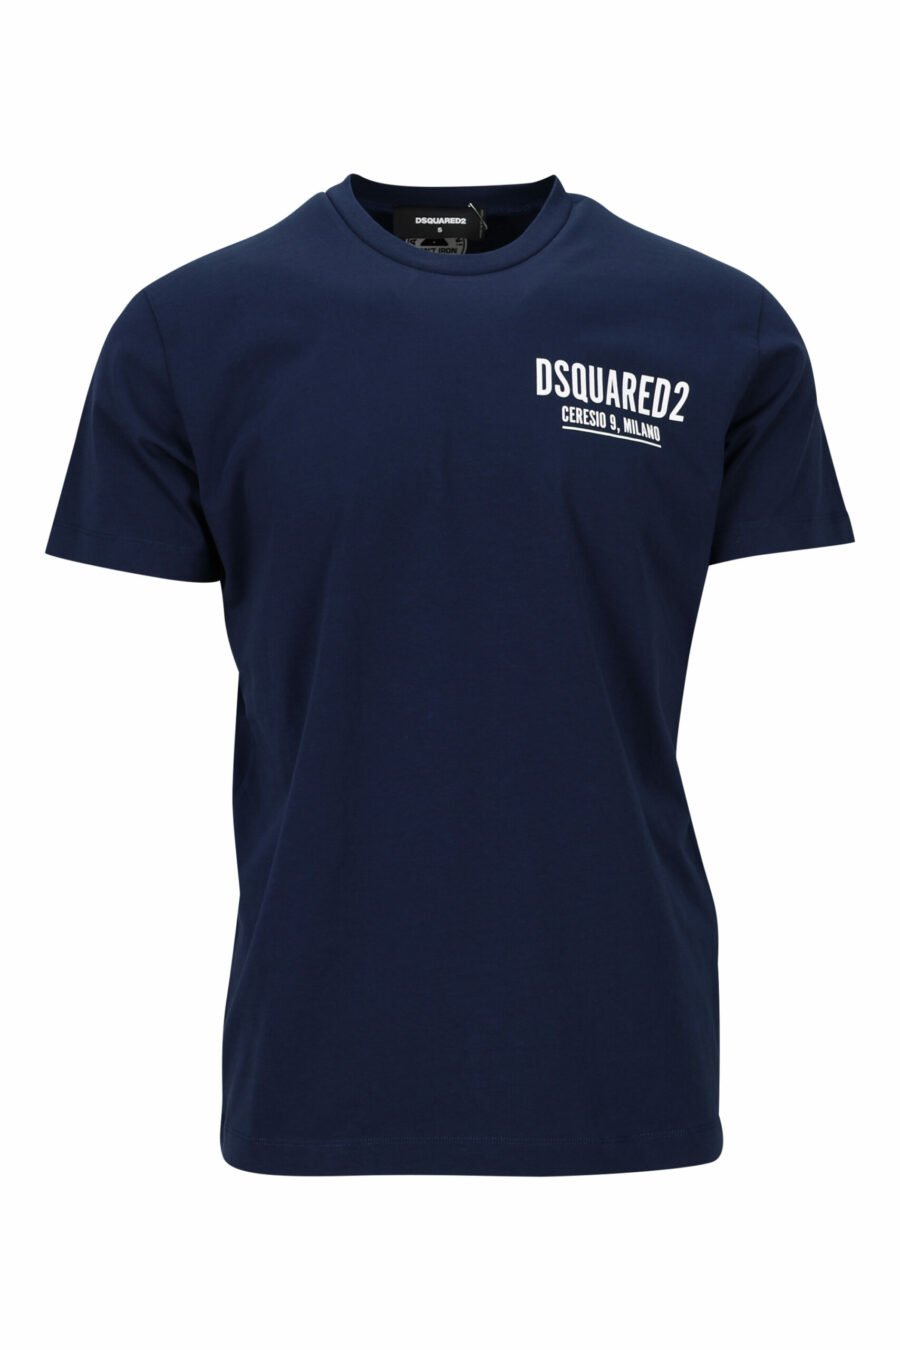 Camiseta azul oscura con minilogo "ceresio 9, milano" - 8054148505196 scaled